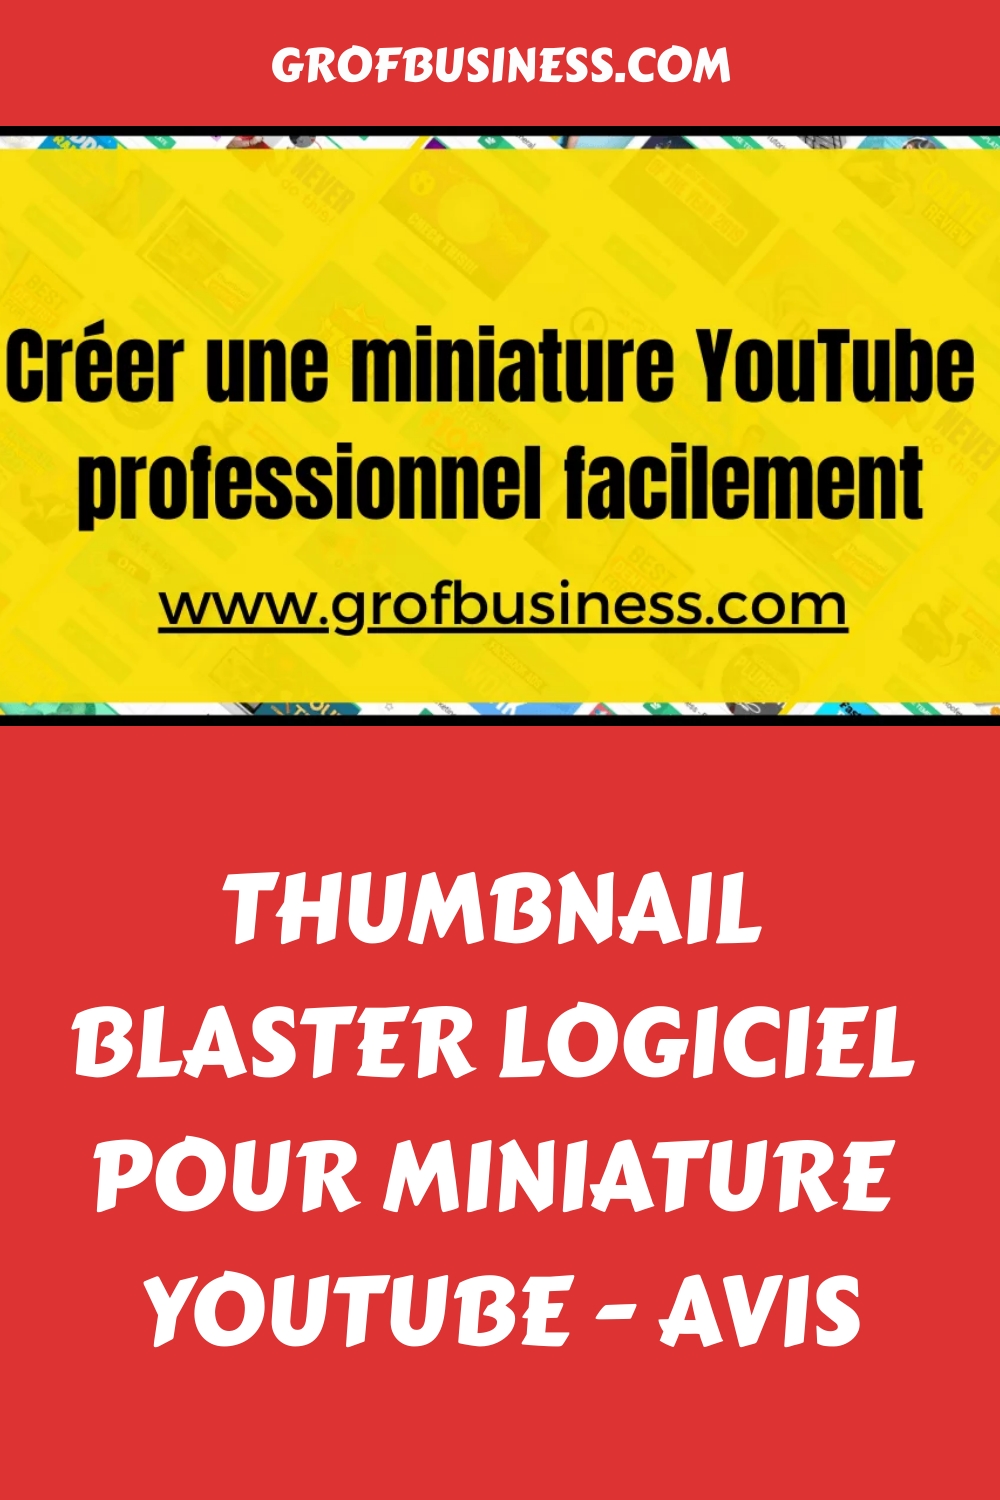 Thumbnail blaster logiciel pour miniature YouTube - Avis